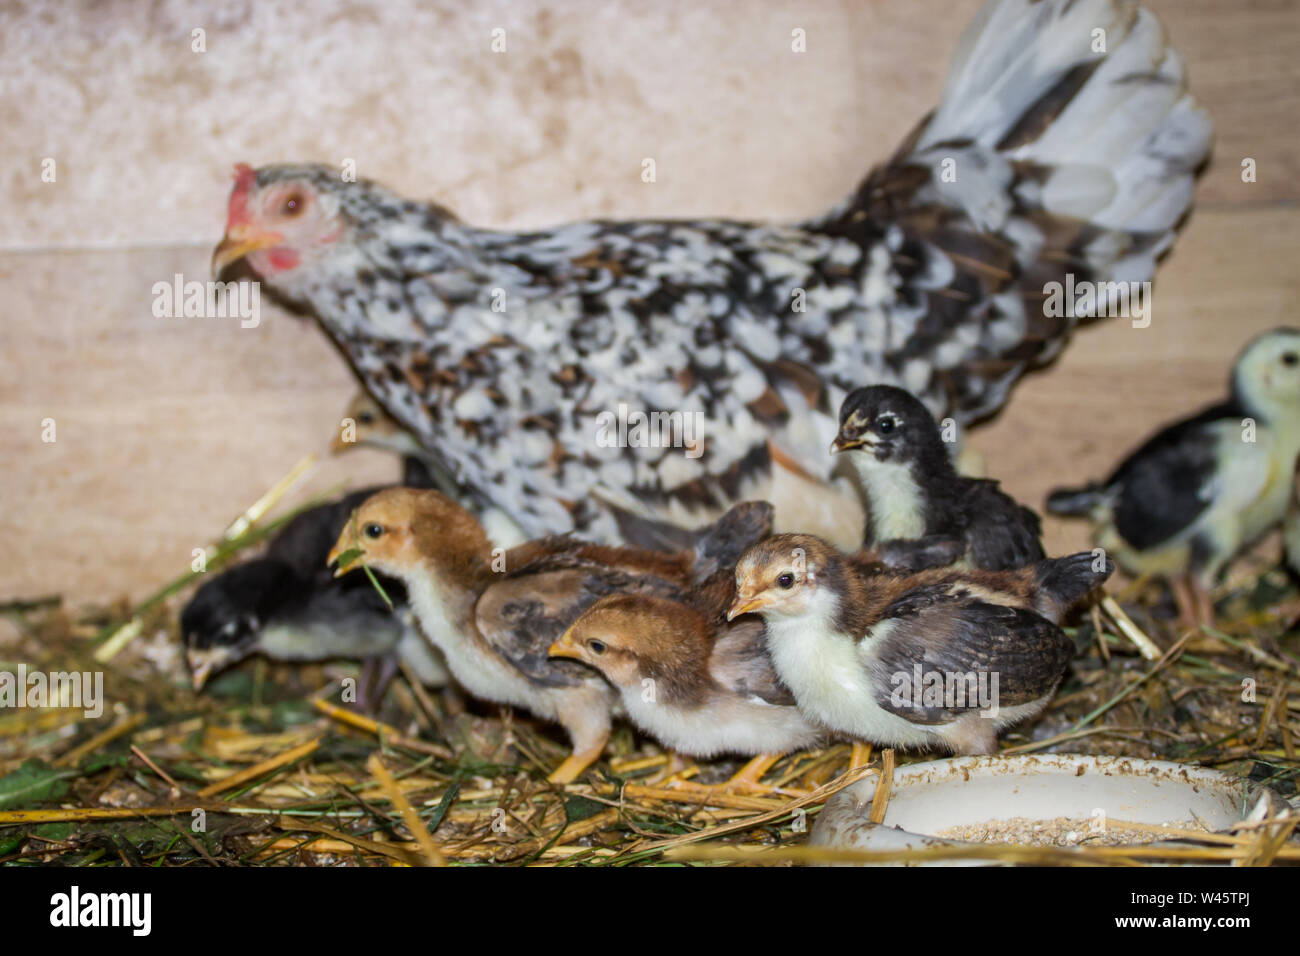 Henne und Ihr flügge der Rasse Stoapiperl/Steinhendl, einer vom Aussterben bedrohten Rasse Huhn aus Österreich Stockfoto